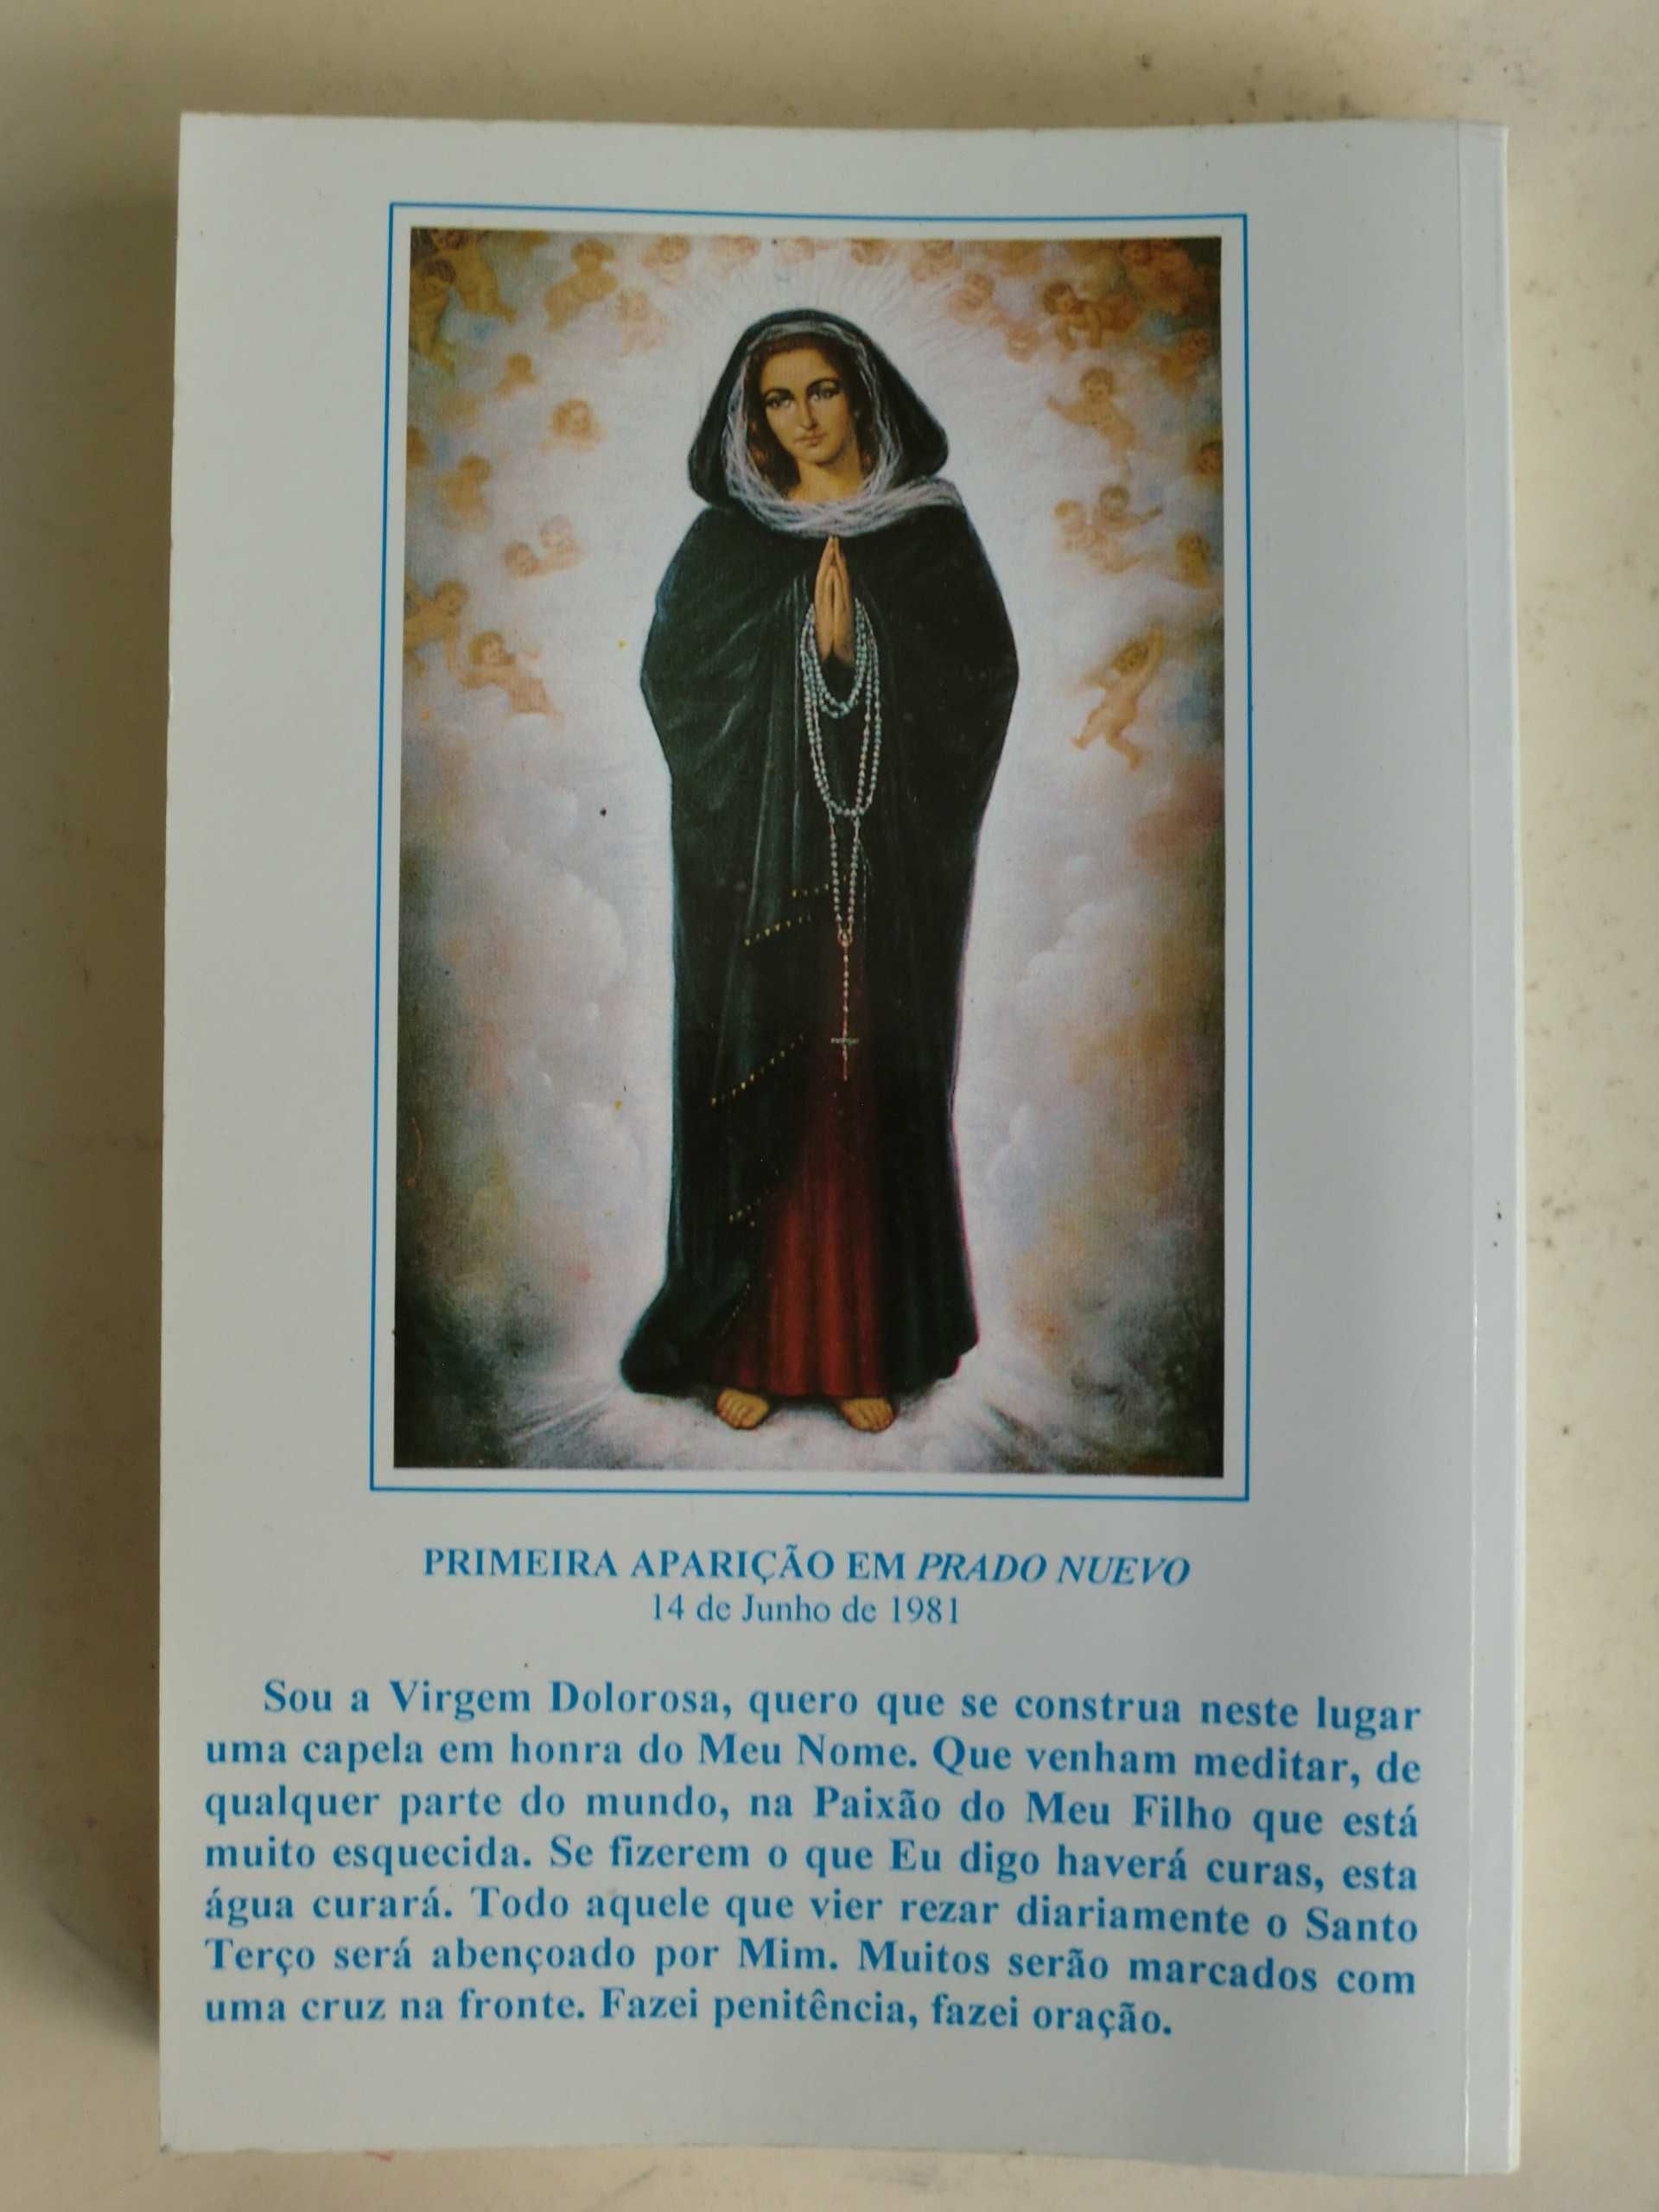 Virgem Dolorosa
Nossa Senhora fala-nos em El Escorial